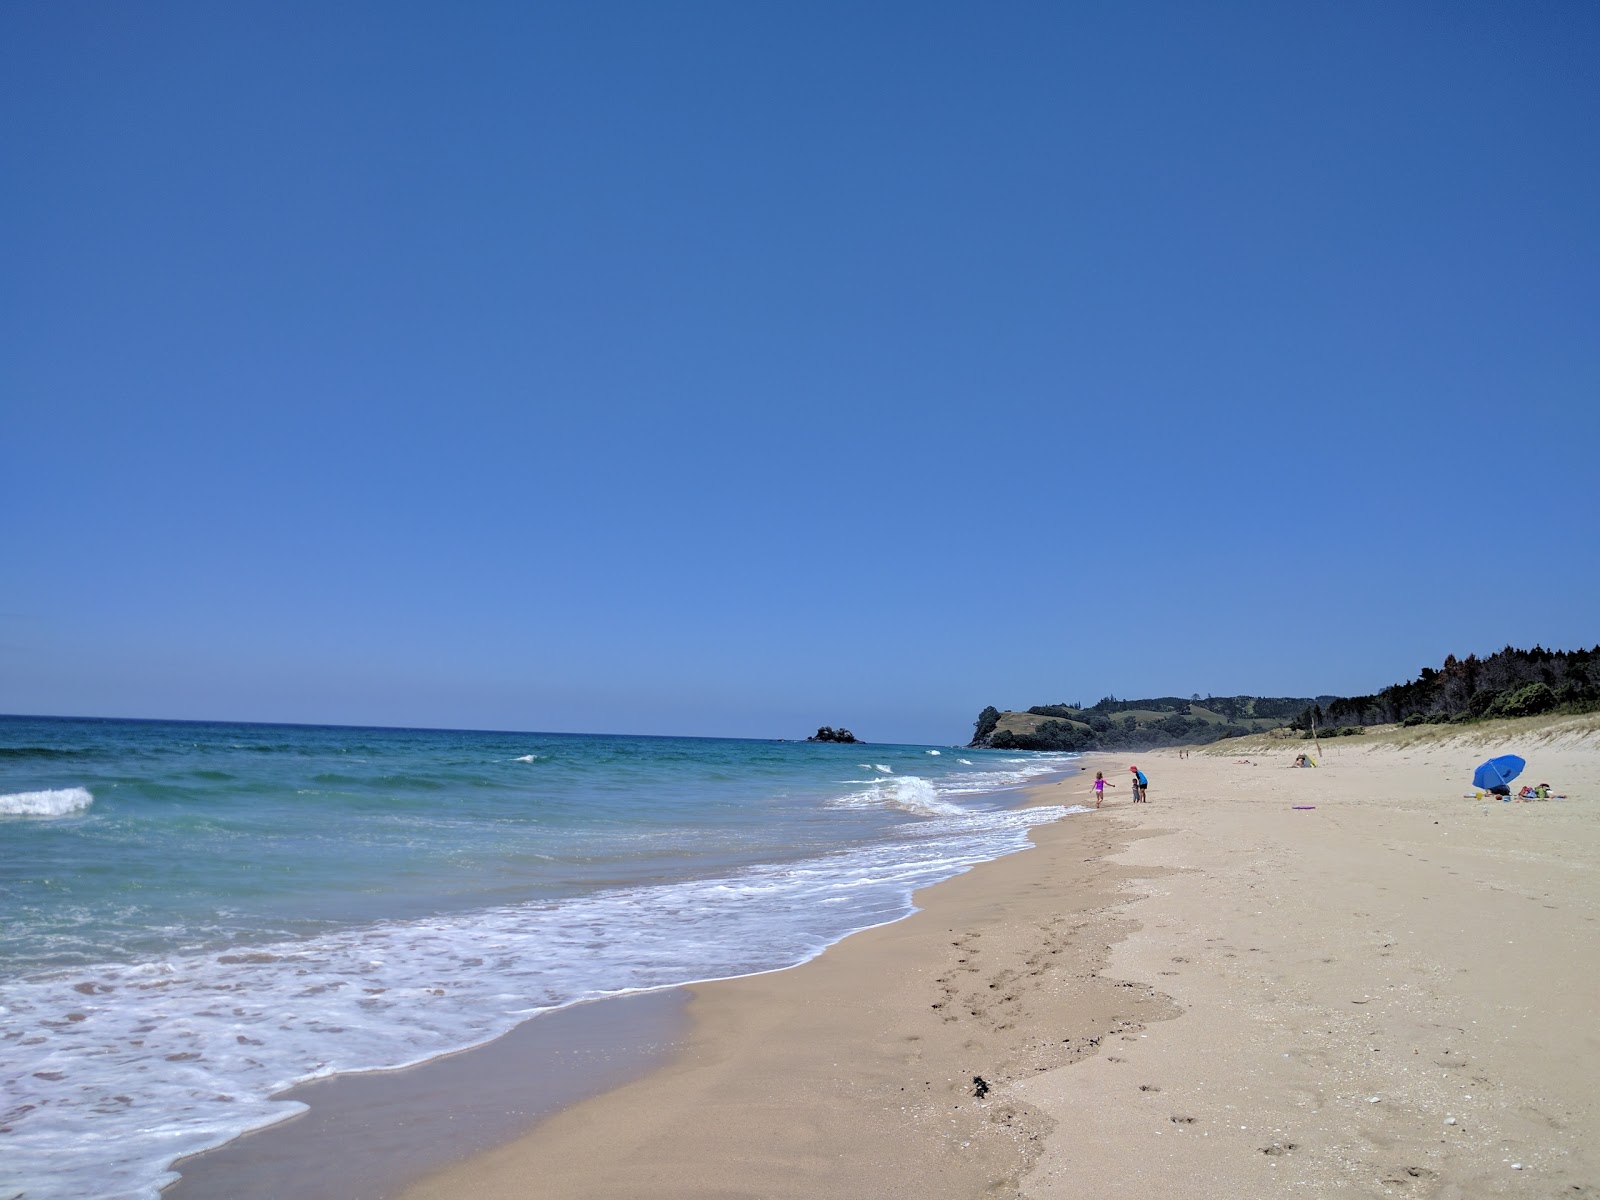 Foto av Opoutere Beach med ljus sand yta